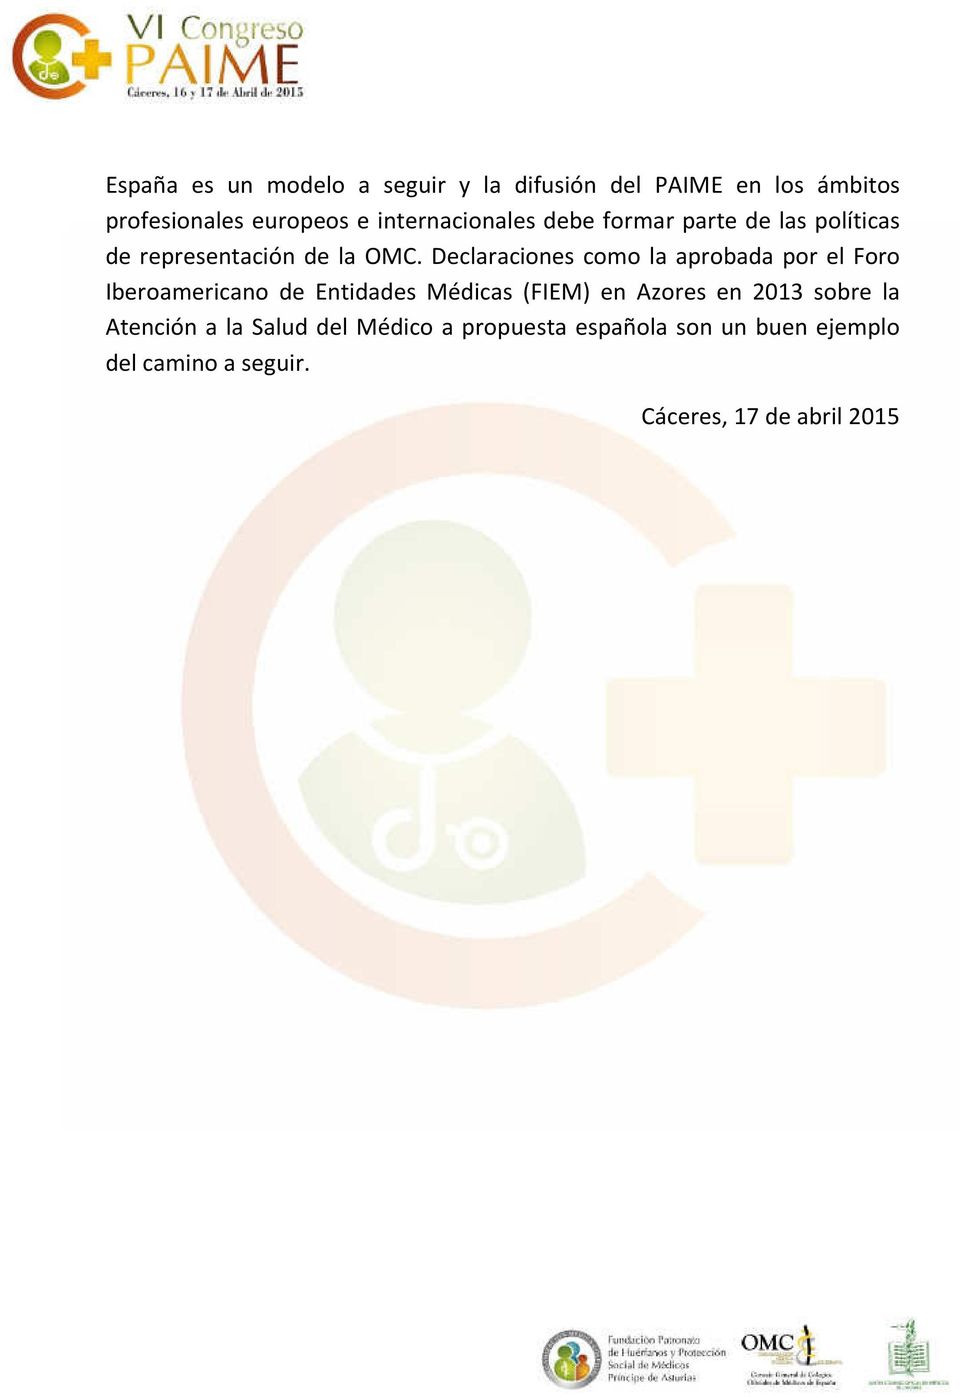 Declaraciones como la aprobada por el Foro Iberoamericano de Entidades Médicas (FIEM) en Azores en